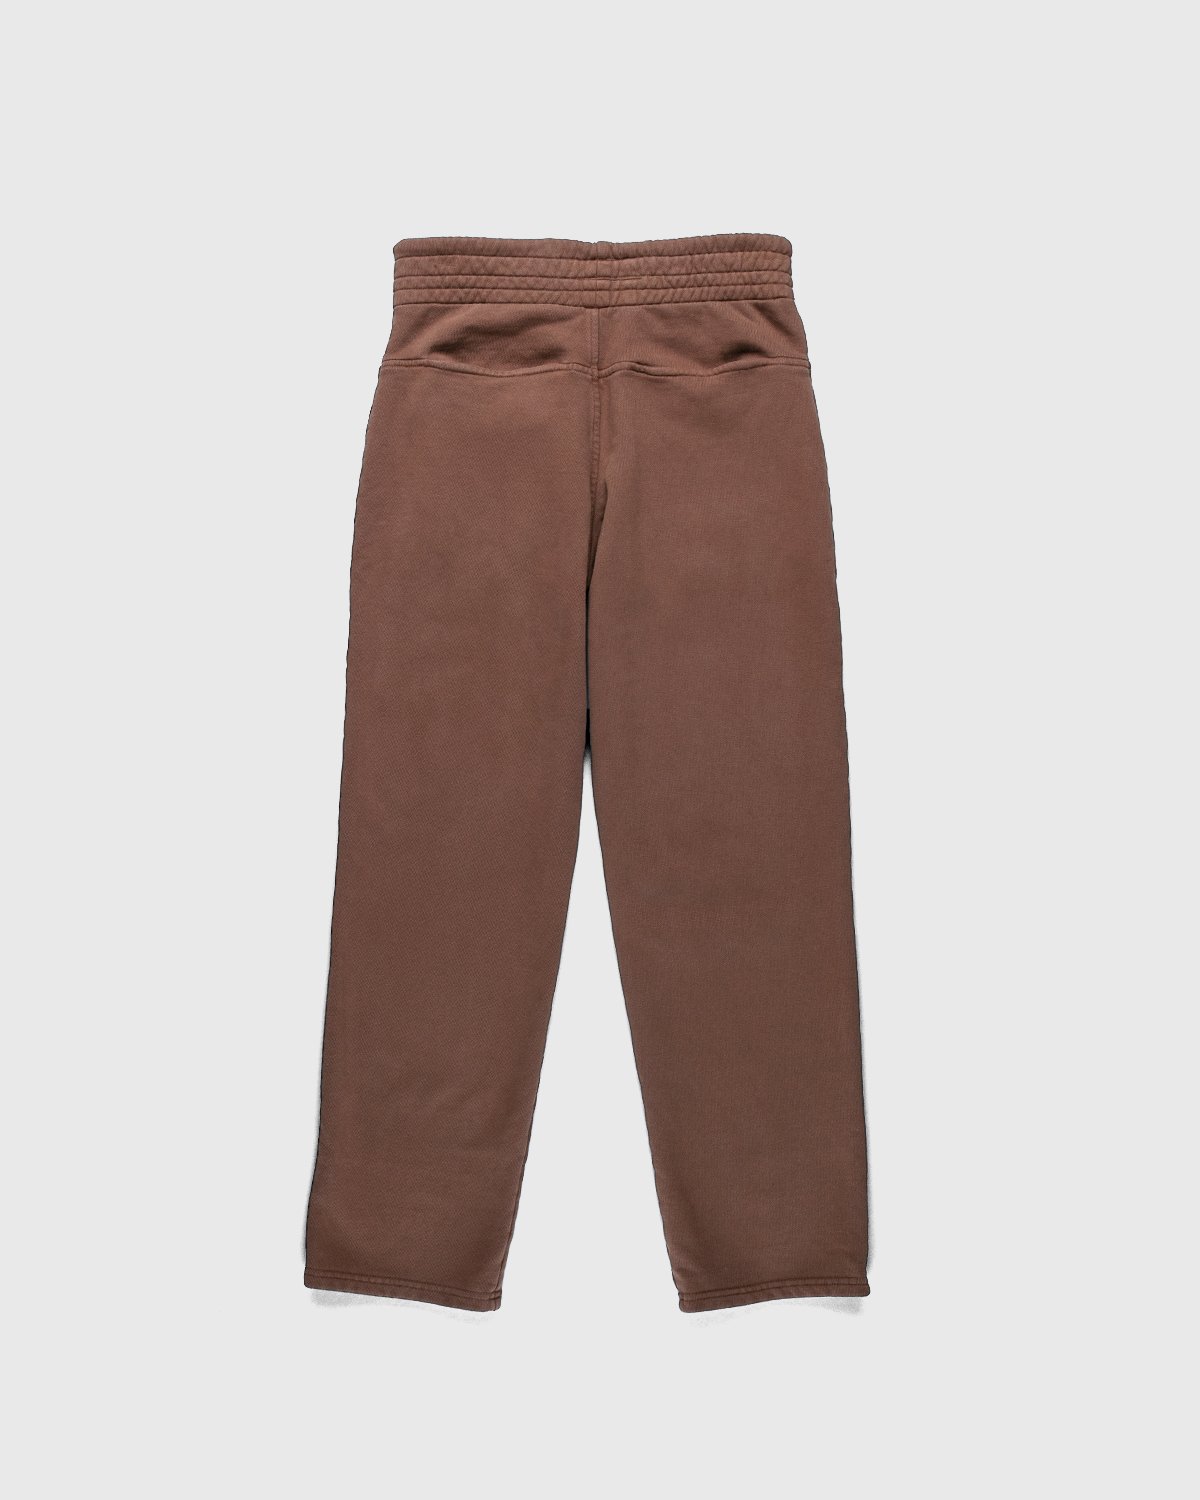 Darryl Brown - Gym Pants Coyote Brown - Clothing - Brown - Image 2